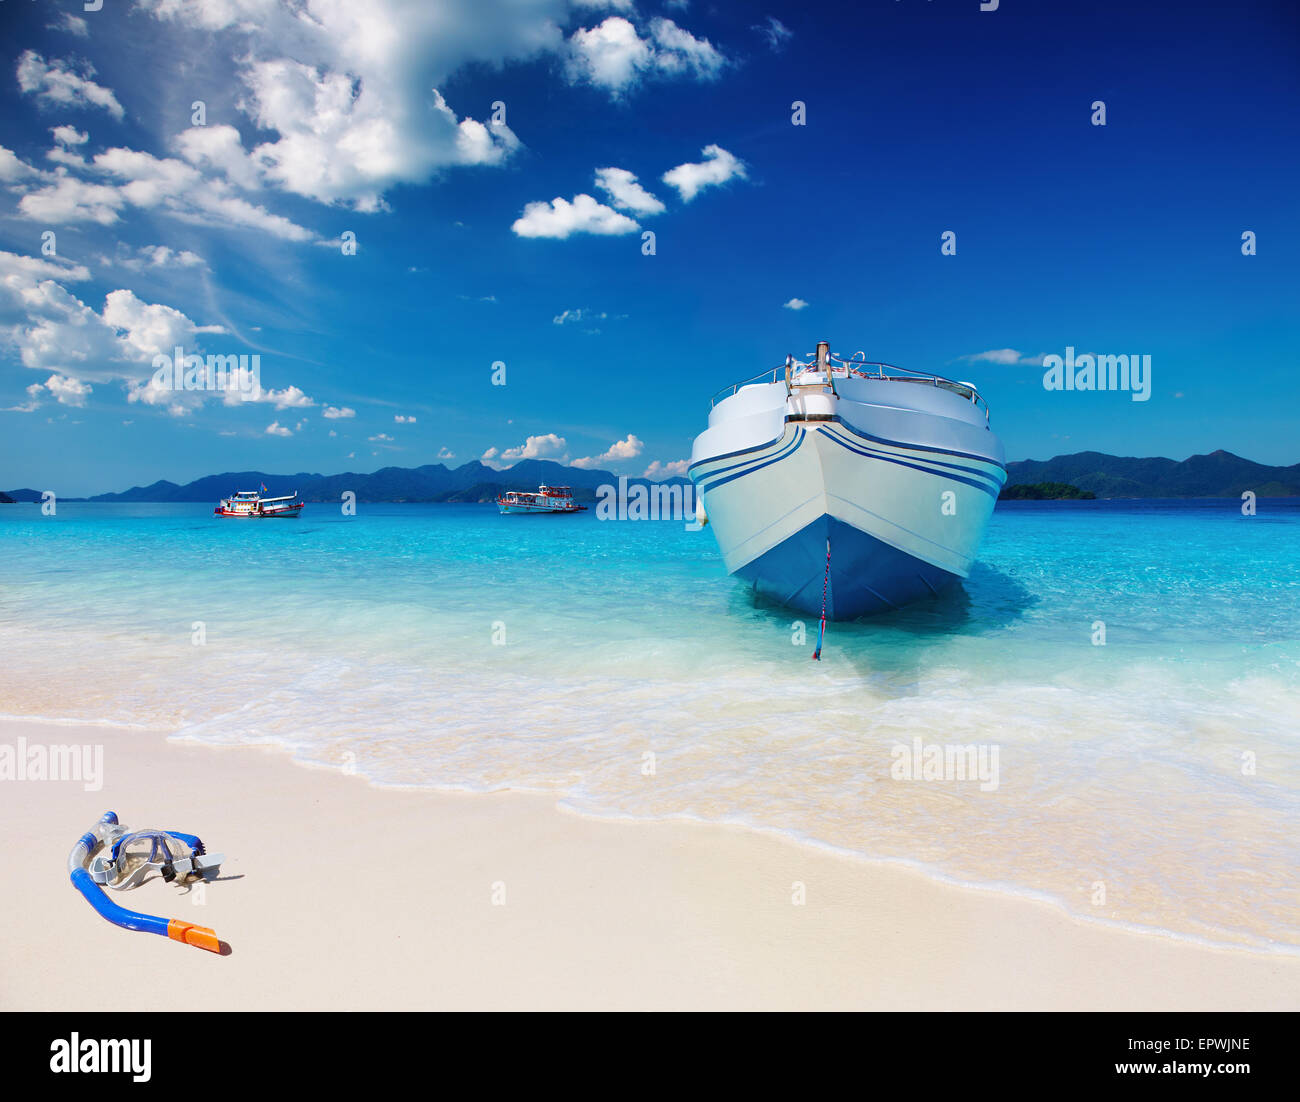 Spiaggia tropicale con sabbia bianca e mare azzurro Foto Stock